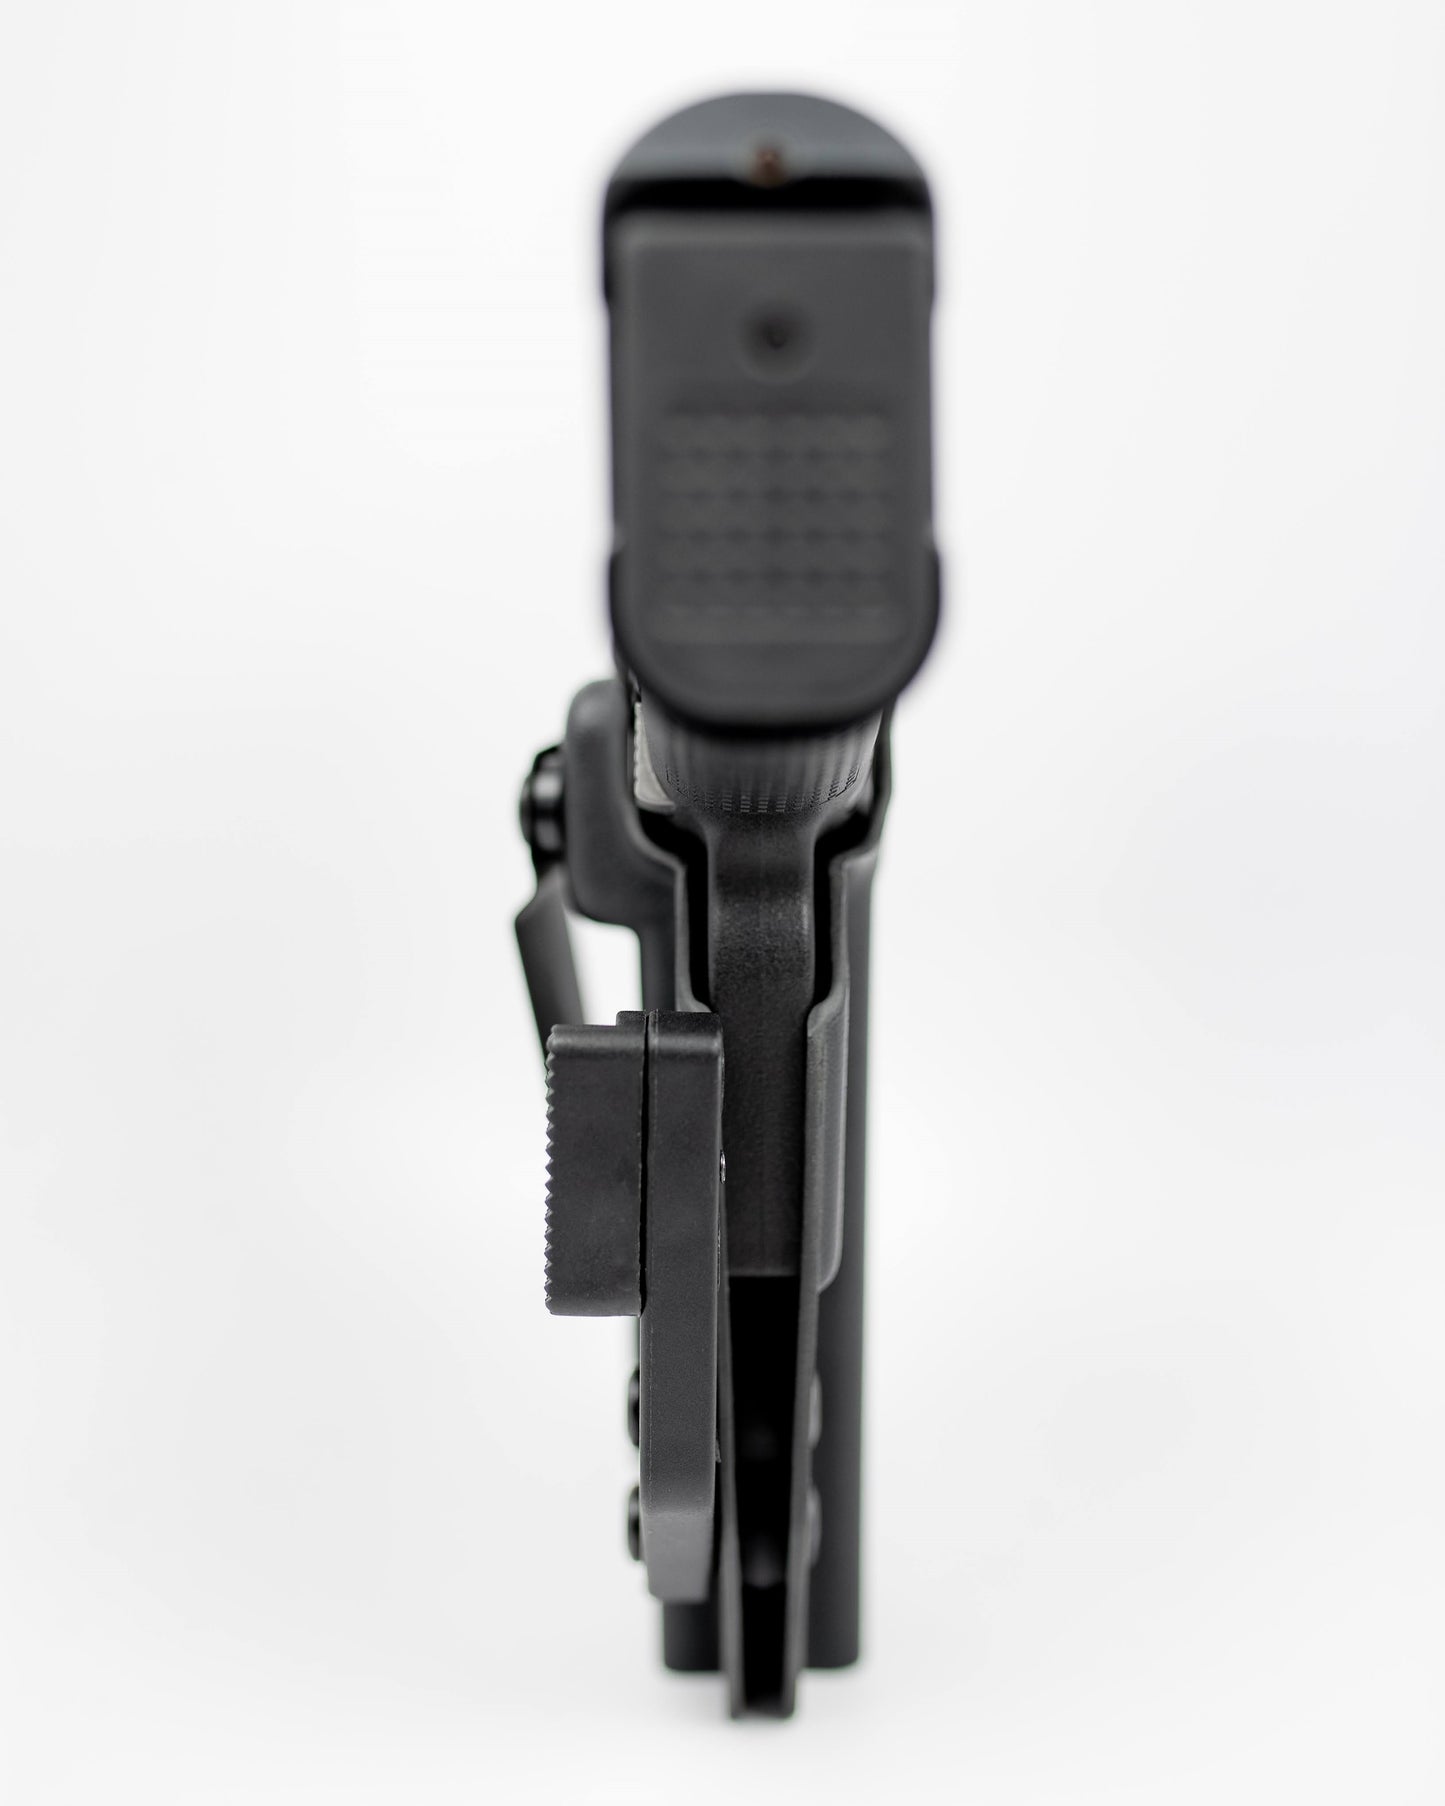 Glock 48/48MOS IWB Holster - Left Handed